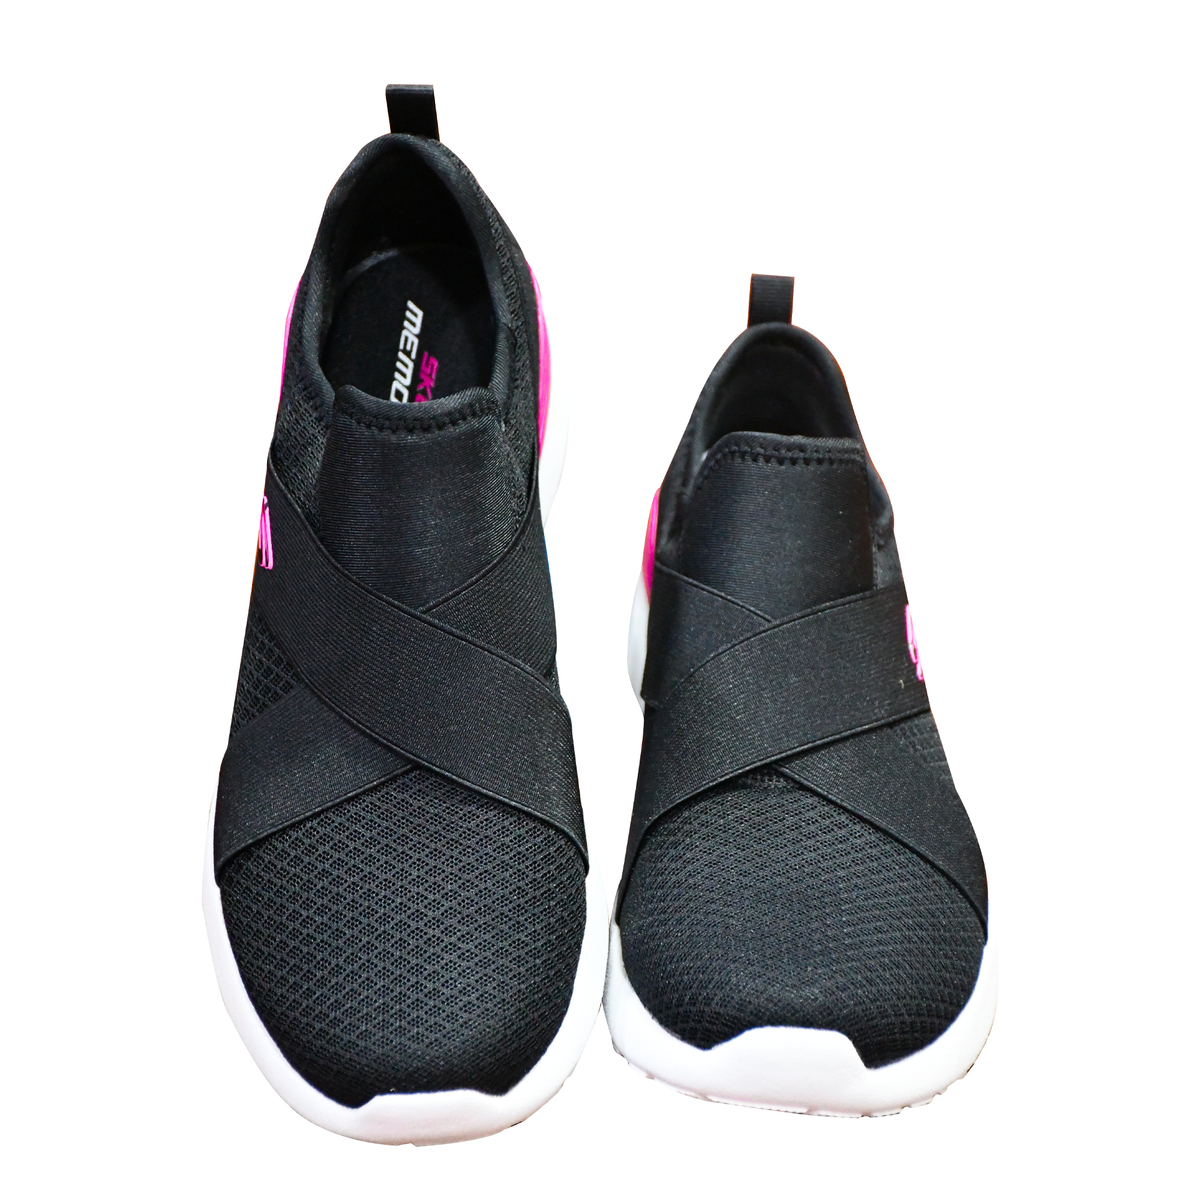 سكيتشرز حذاء رياضي نسائي 149341 أسود وأبيض، 39.5